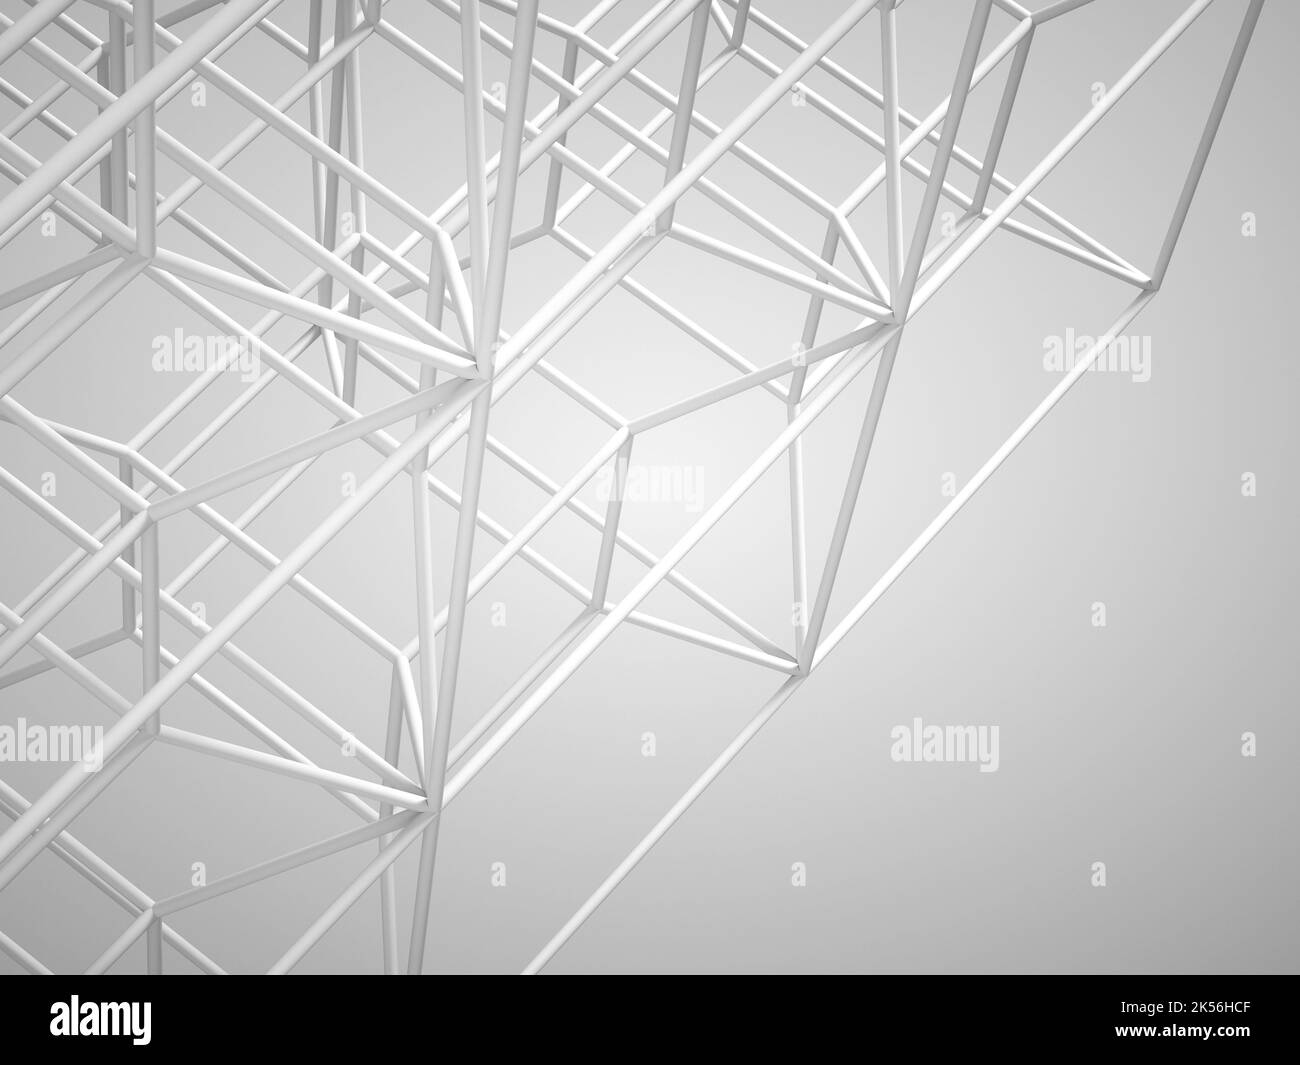 Résumé installation de haute technologie, structure de cellule à cadre métallique blanc sur fond blanc. 3d illustration du rendu Banque D'Images